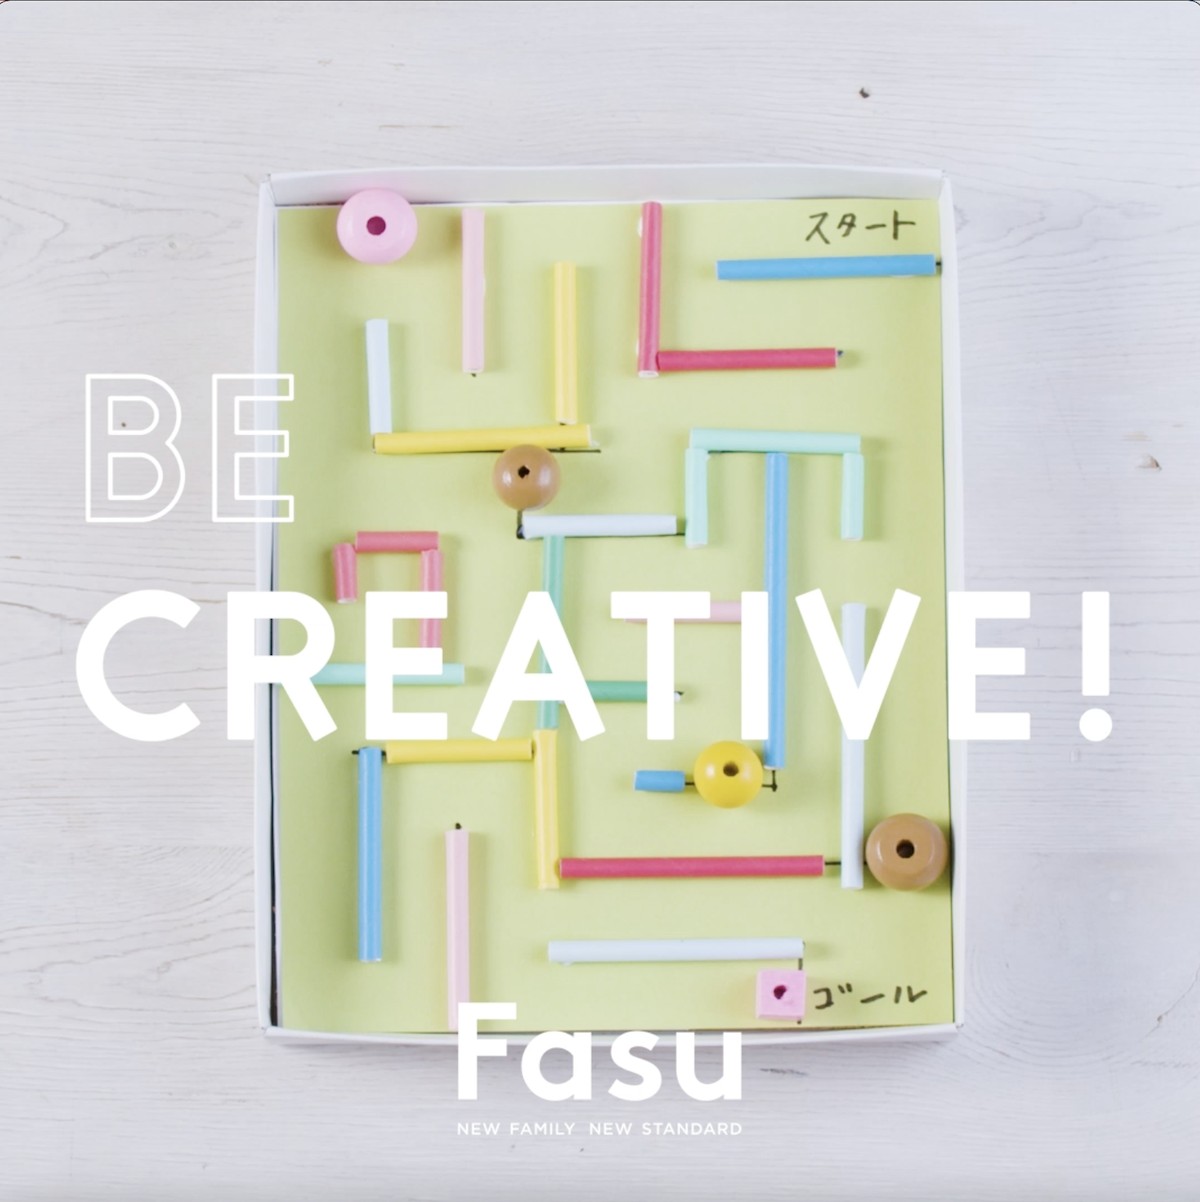 子どももつくれるカラフル迷路 コース作りも思いのまま Be Creative 動画 Fasu ファス